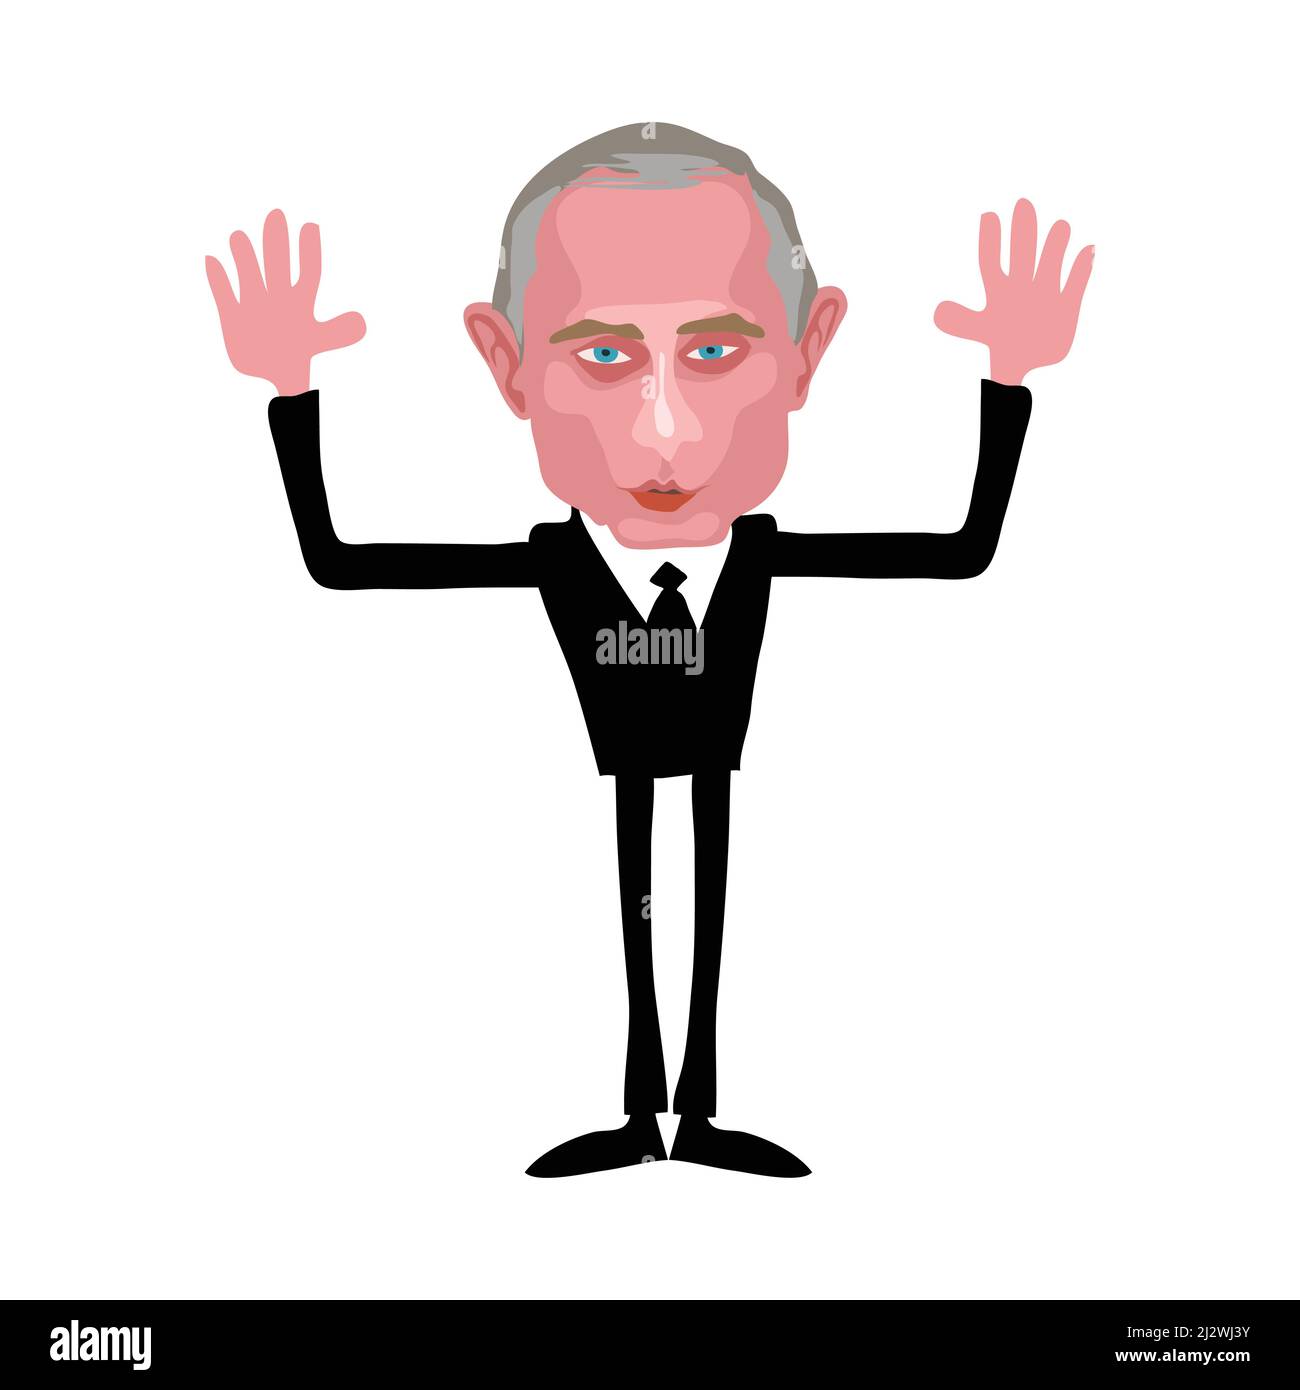 Vladimir Poutine Président de la Russie Cartoon . Caricature Illustration de Vecteur